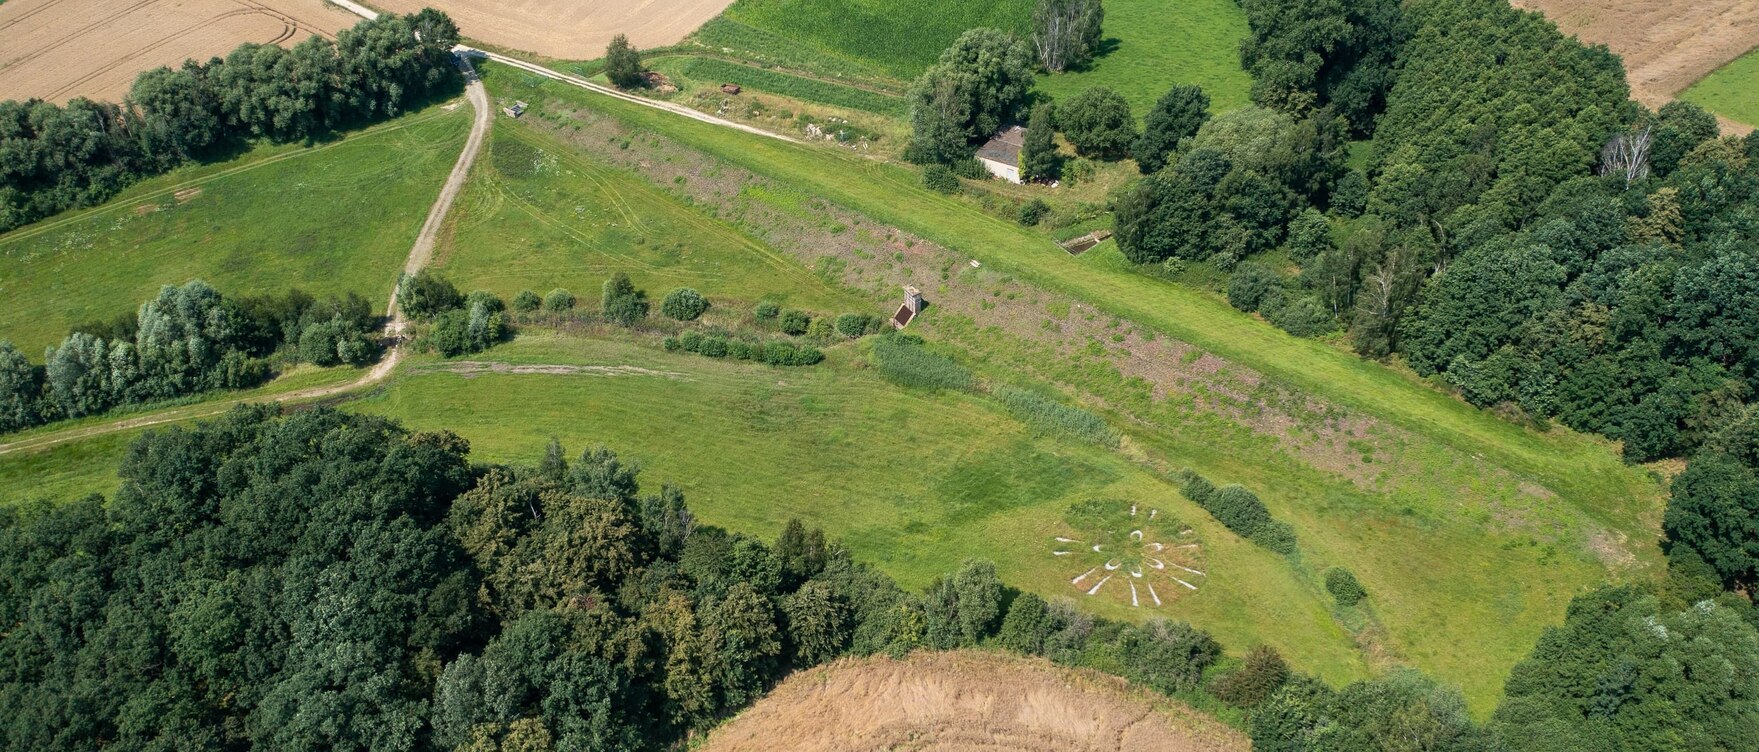 Luftbild von grünen Hochwasserrückhaltebecken, umgeben von Feldern